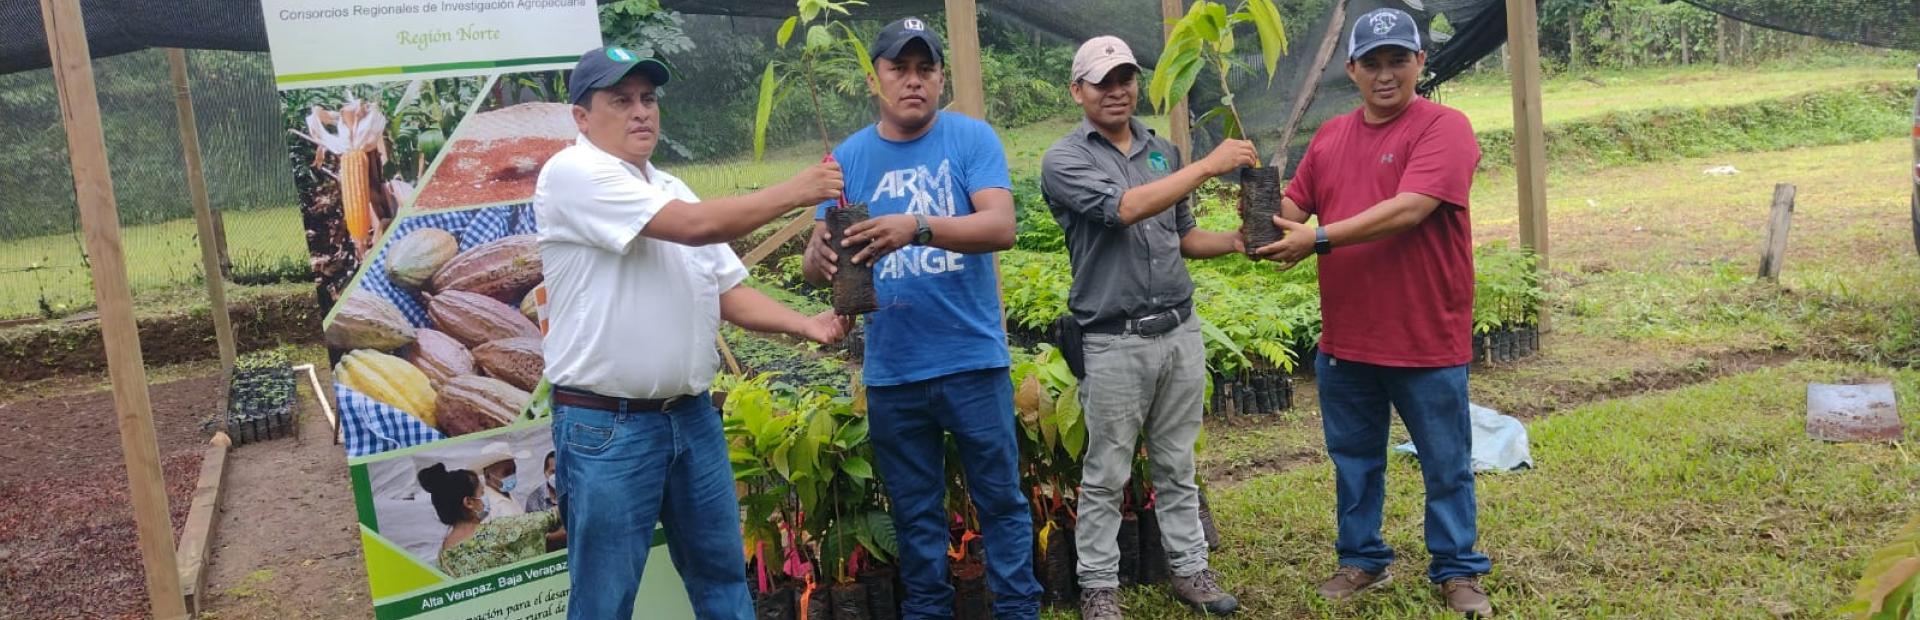 Entrega de plantas elite de cacao a asociaciones de productores